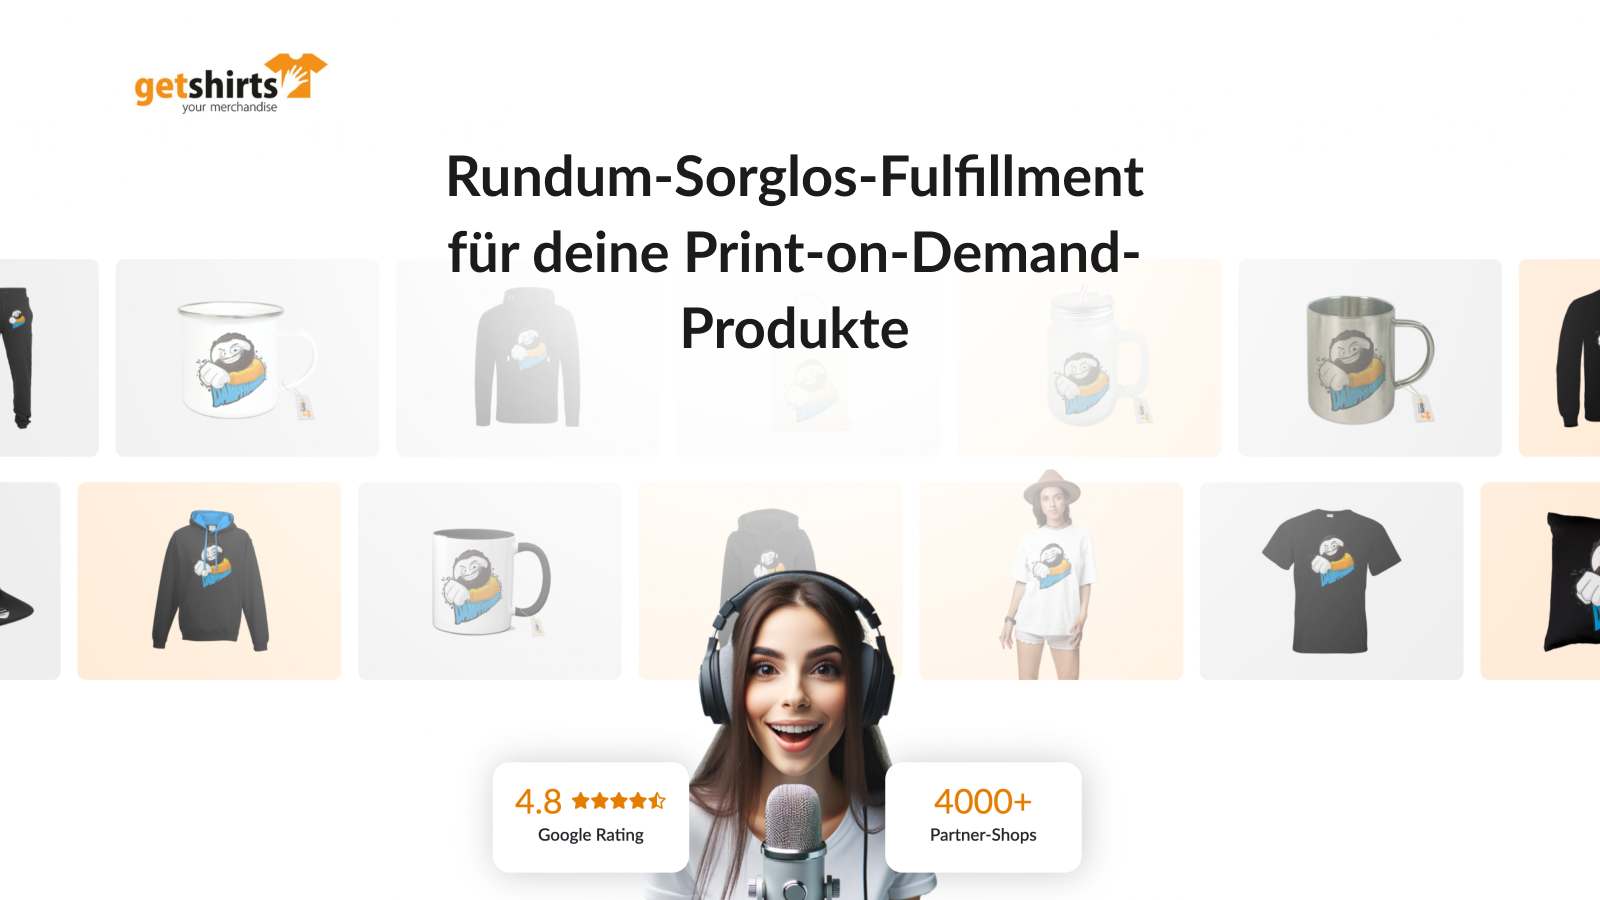 Rundum-Sorglos-Fulfillment für deine Print-on-Demand-Produkte